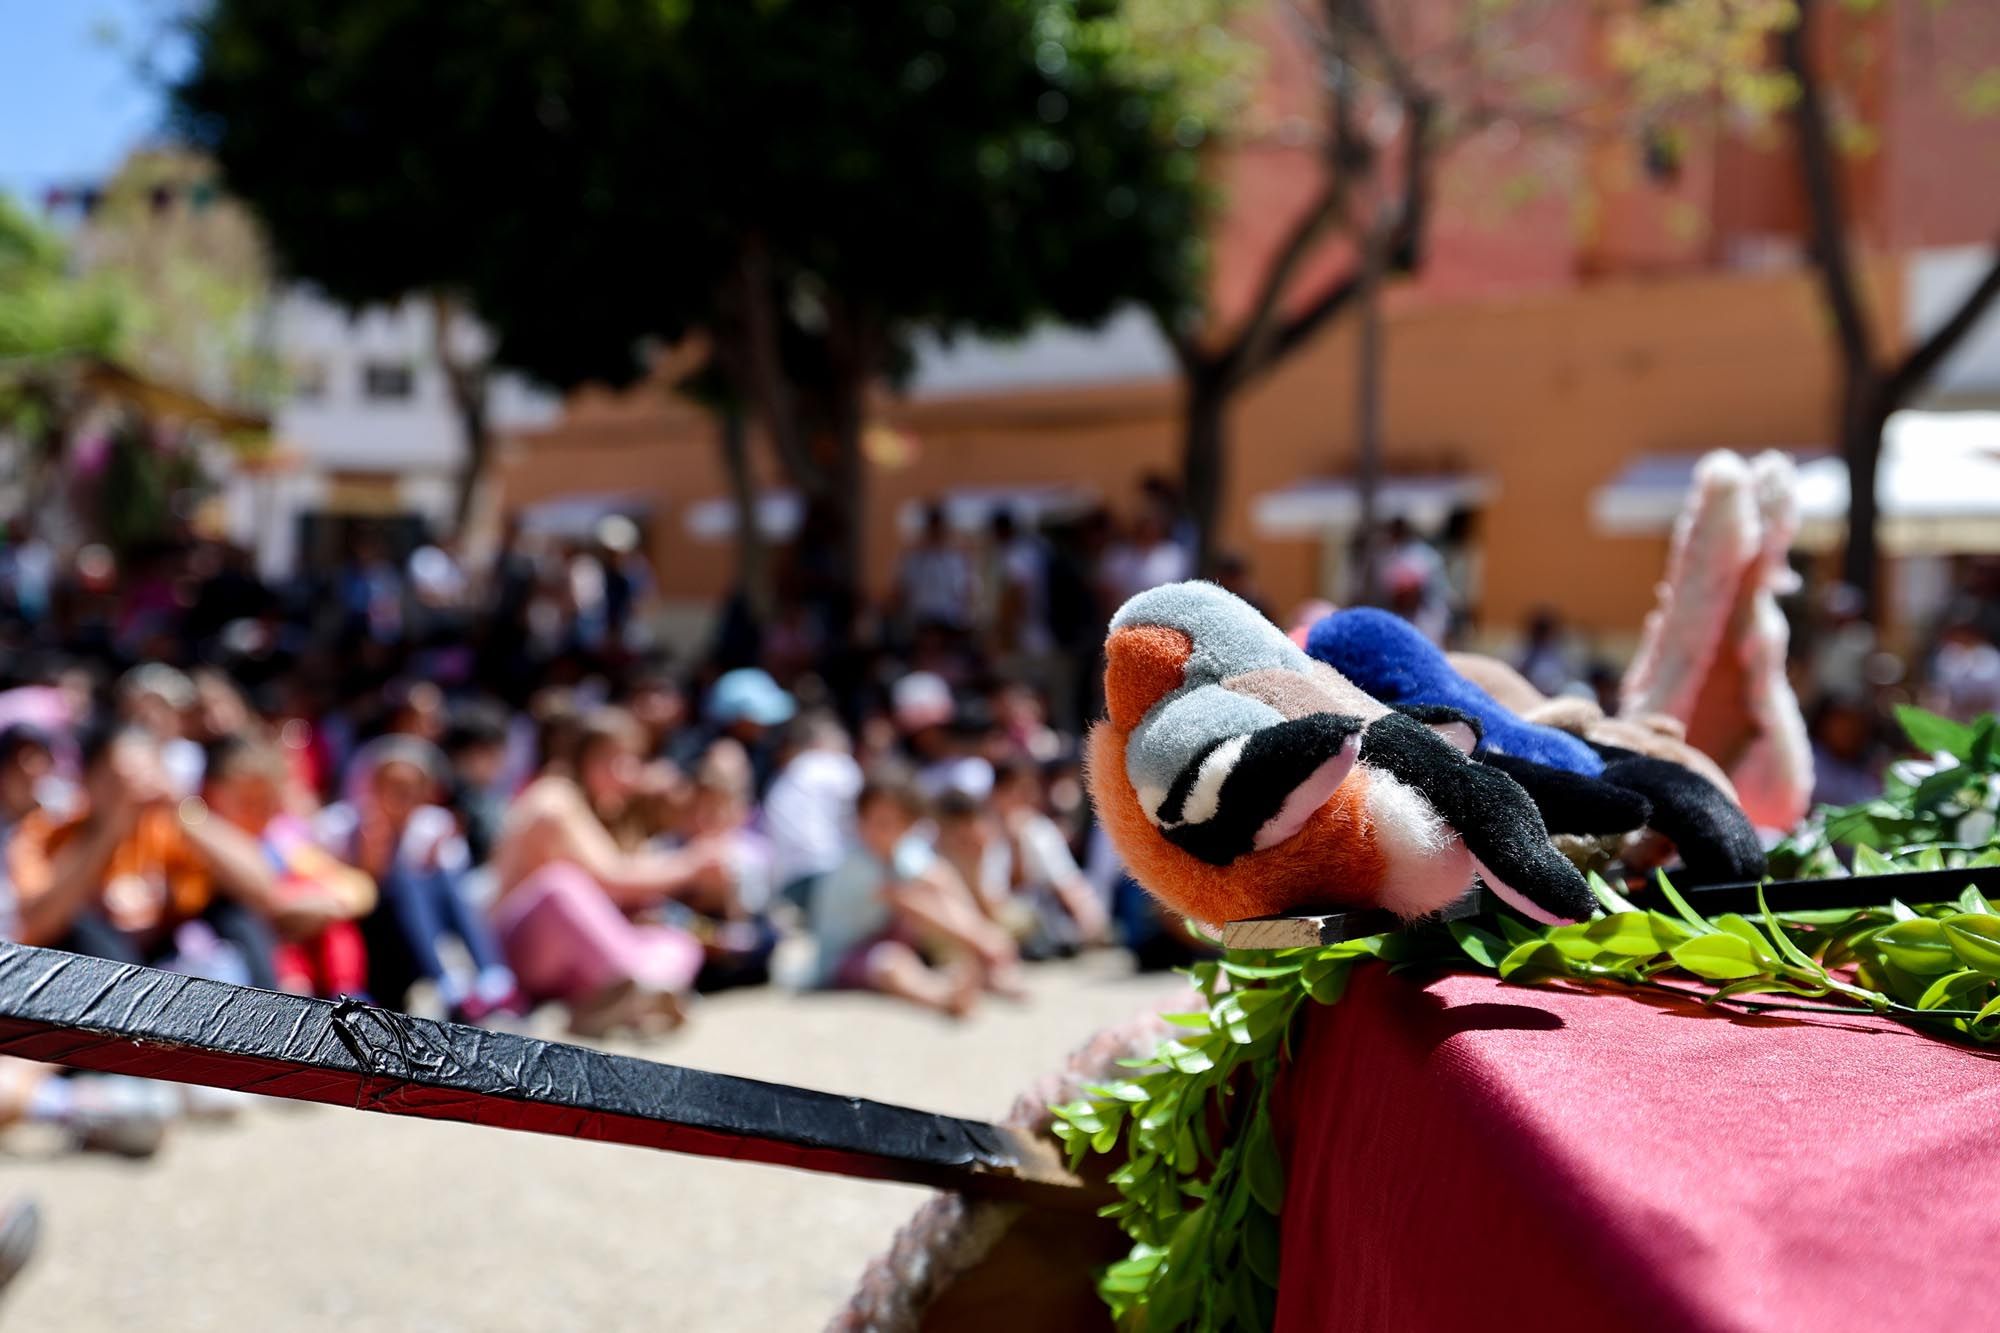 Los escolares de Ibiza visitan la feria Eivissa Medieval